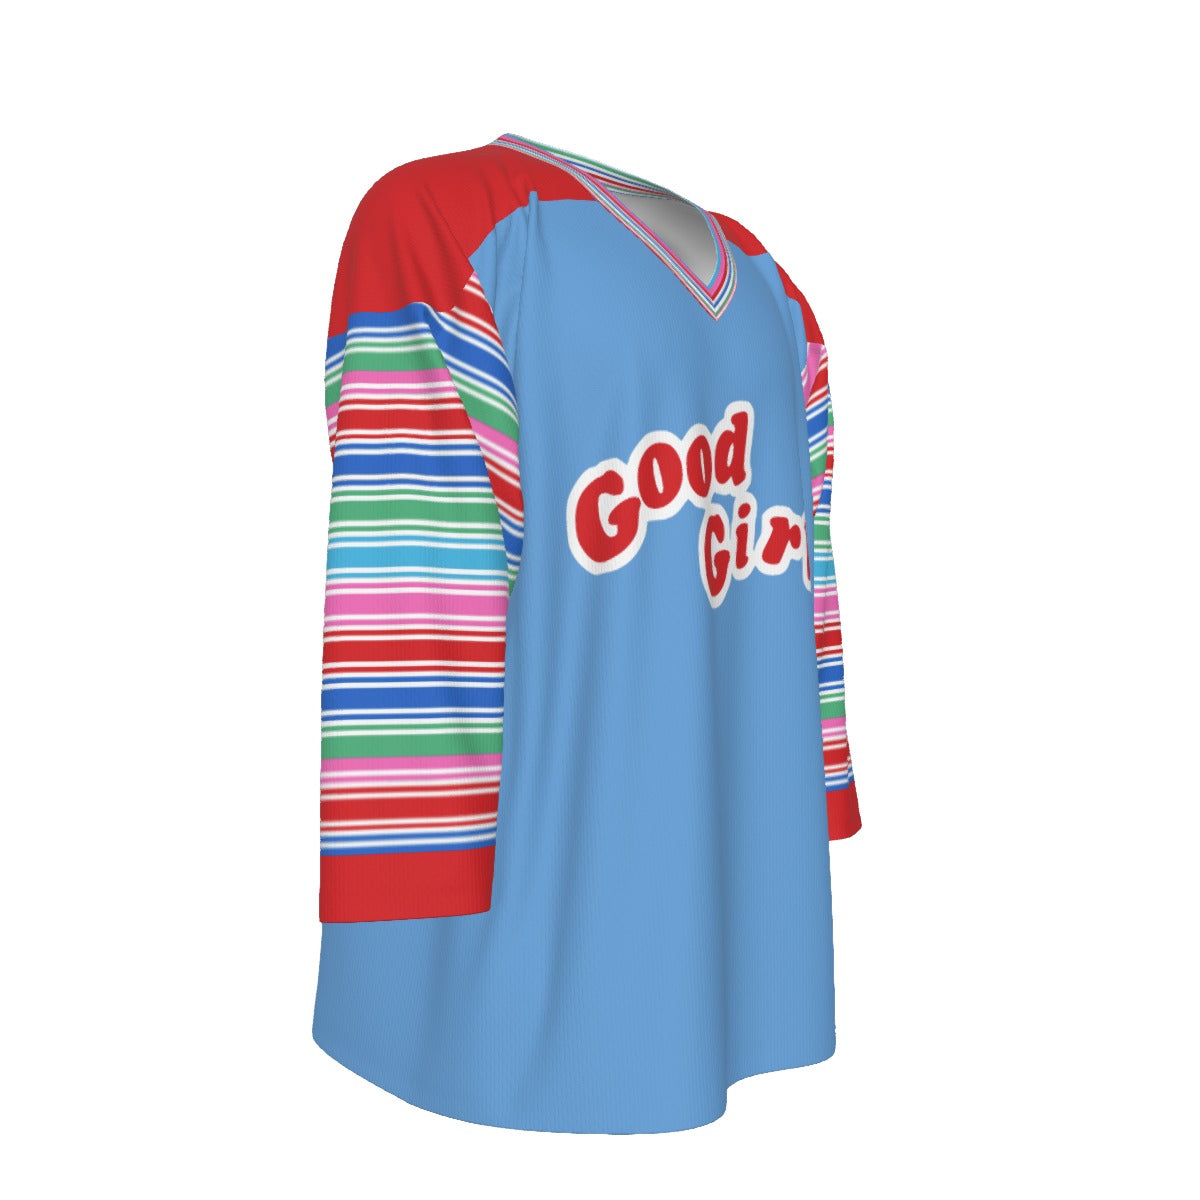 Chucky / Good Girls Unisex V-neck Hockey Jersey